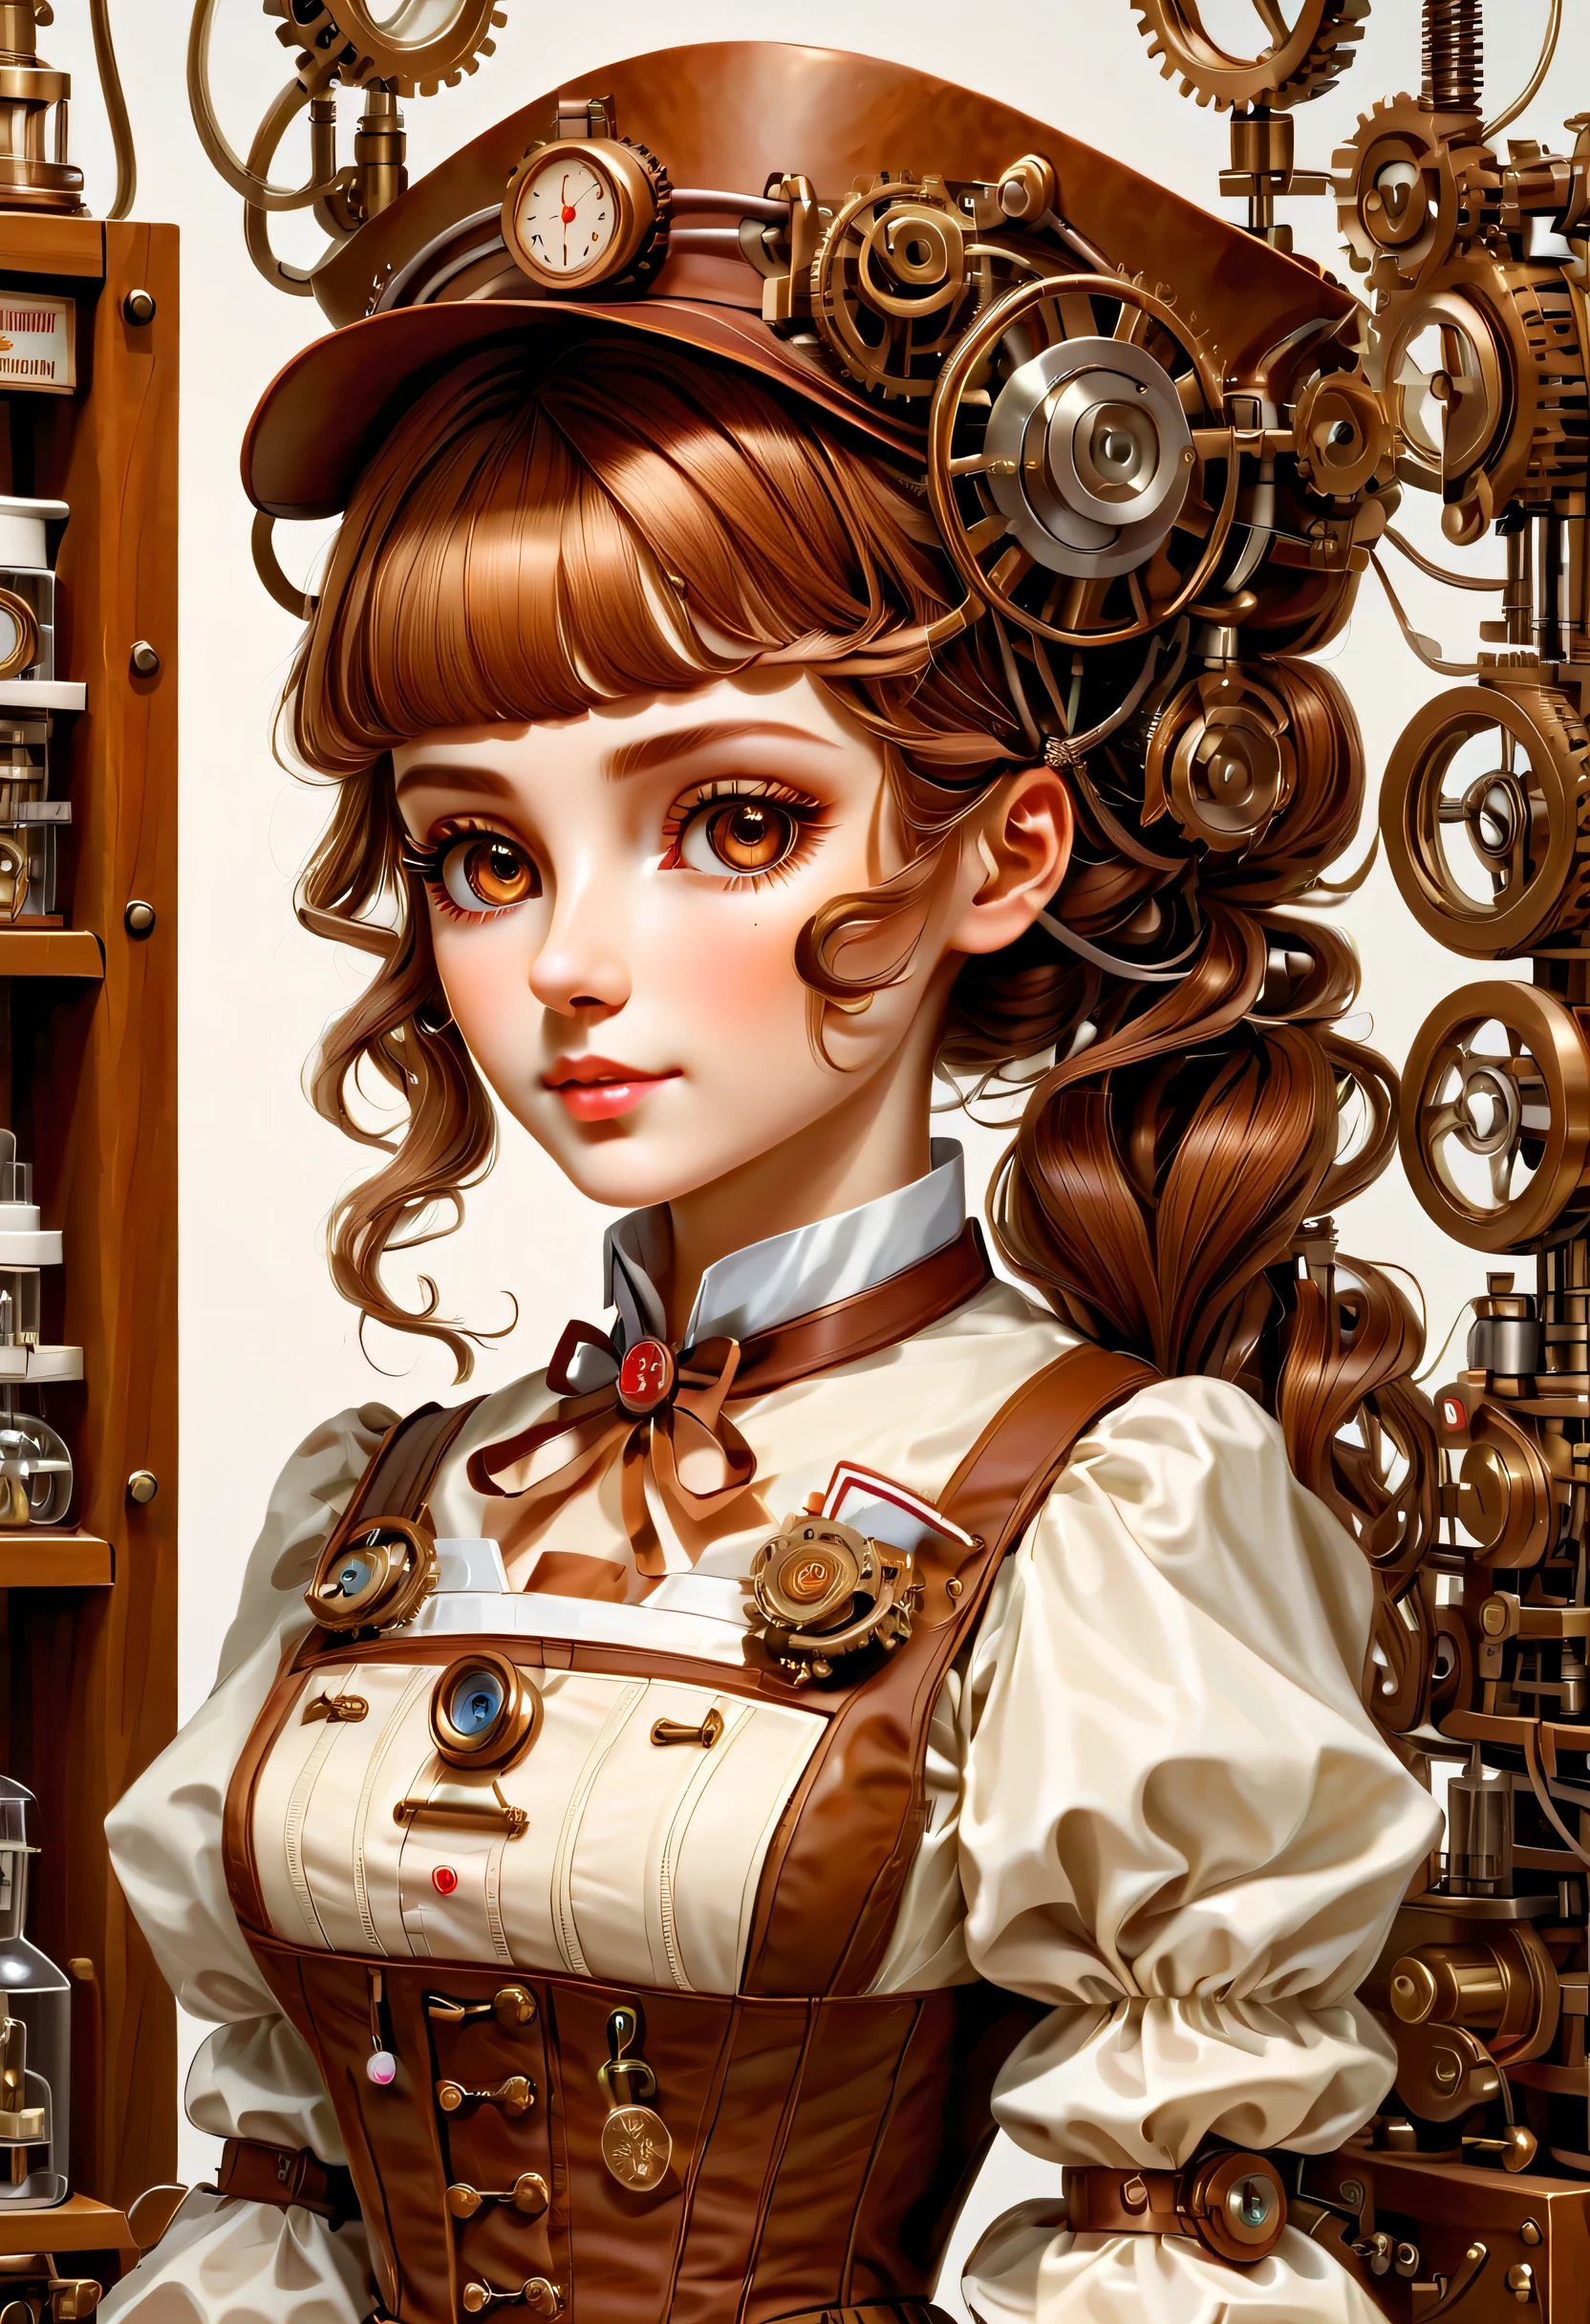 机制:人形生物:護士:16th century European 護士 uniform,娃娃臉:完美的臉:棕色的大眼睛,睫毛,接线,她是由機器製成的,她是一位護理專家,安全感,蒸汽朋克元素,机械的 engineering,机械的ly,机械的,流行音樂,可愛的,錯綜複雜的細節,很好,高解析度,高品質,最高品質,清楚地,清楚,美麗的光影,三个维度,可愛的外表,複雜的配置,机制,動態的,忙碌的,努力工作,讓人想要支持的表達方式,醫用器材,醫療用品貨架,小瓶,提出證據證明它是一台機器,迷人的,熟悉